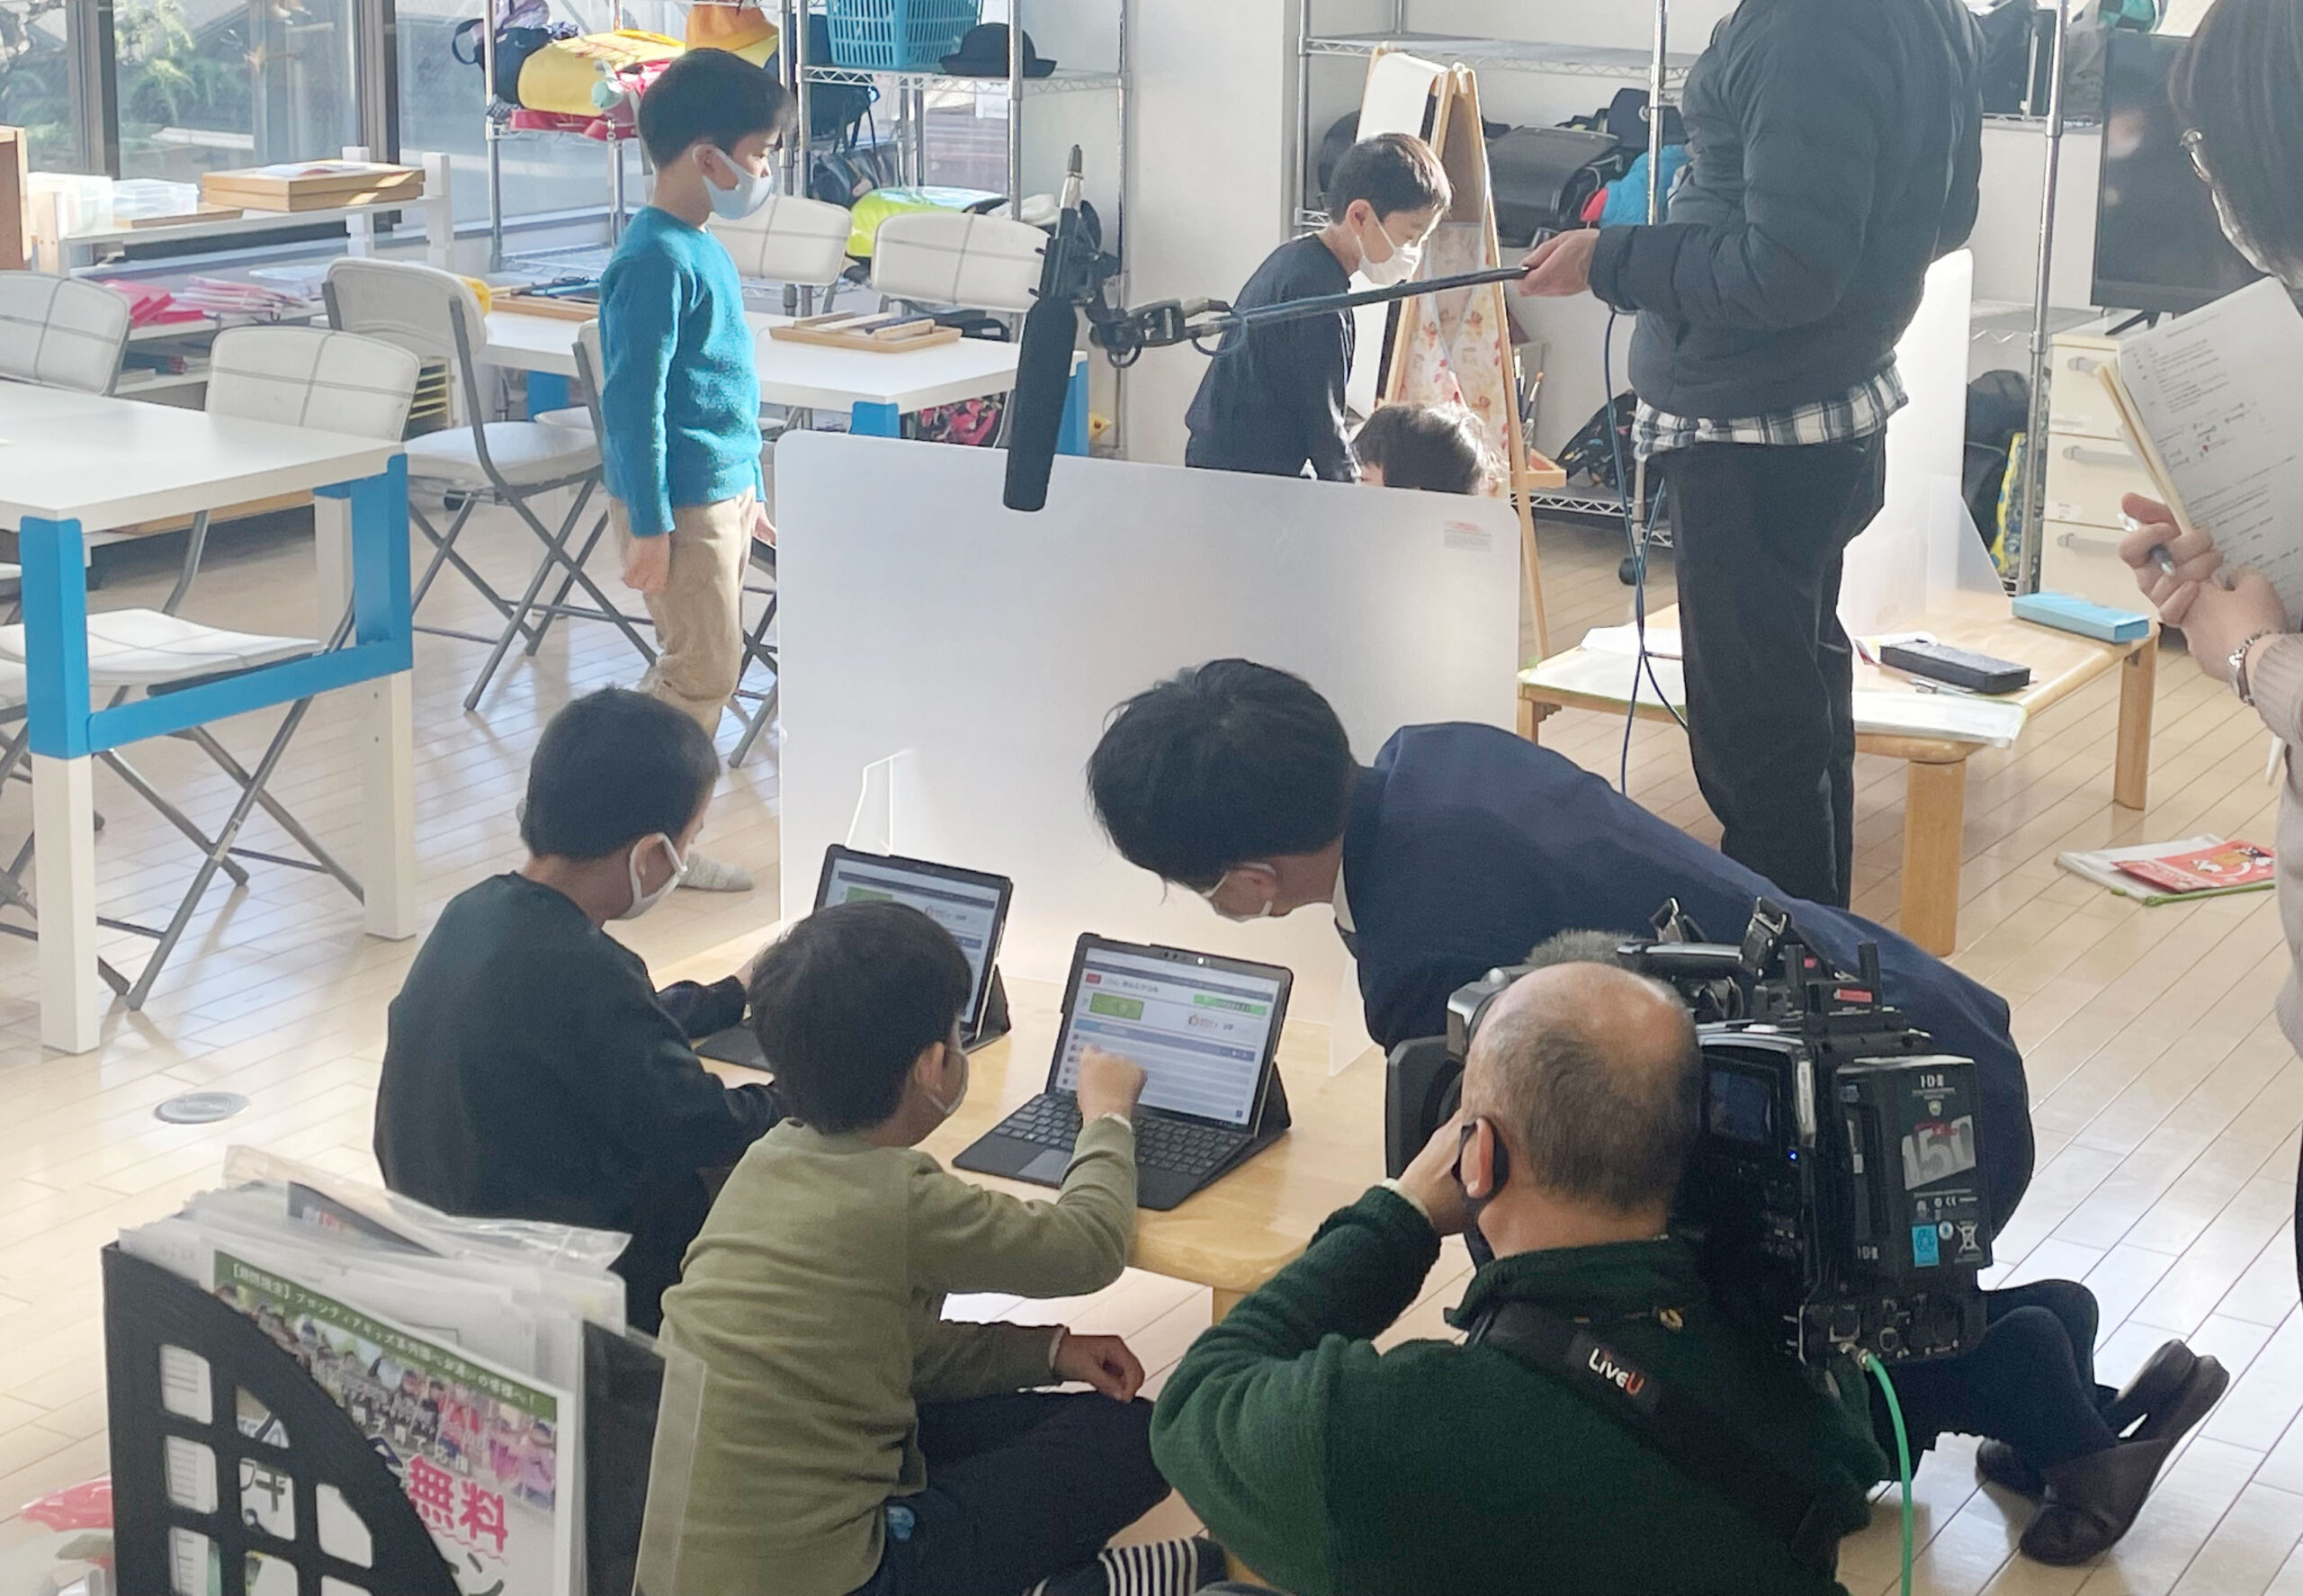 【メディア】地上波NHKとNTVの報道番組に学童クラブが紹介されました